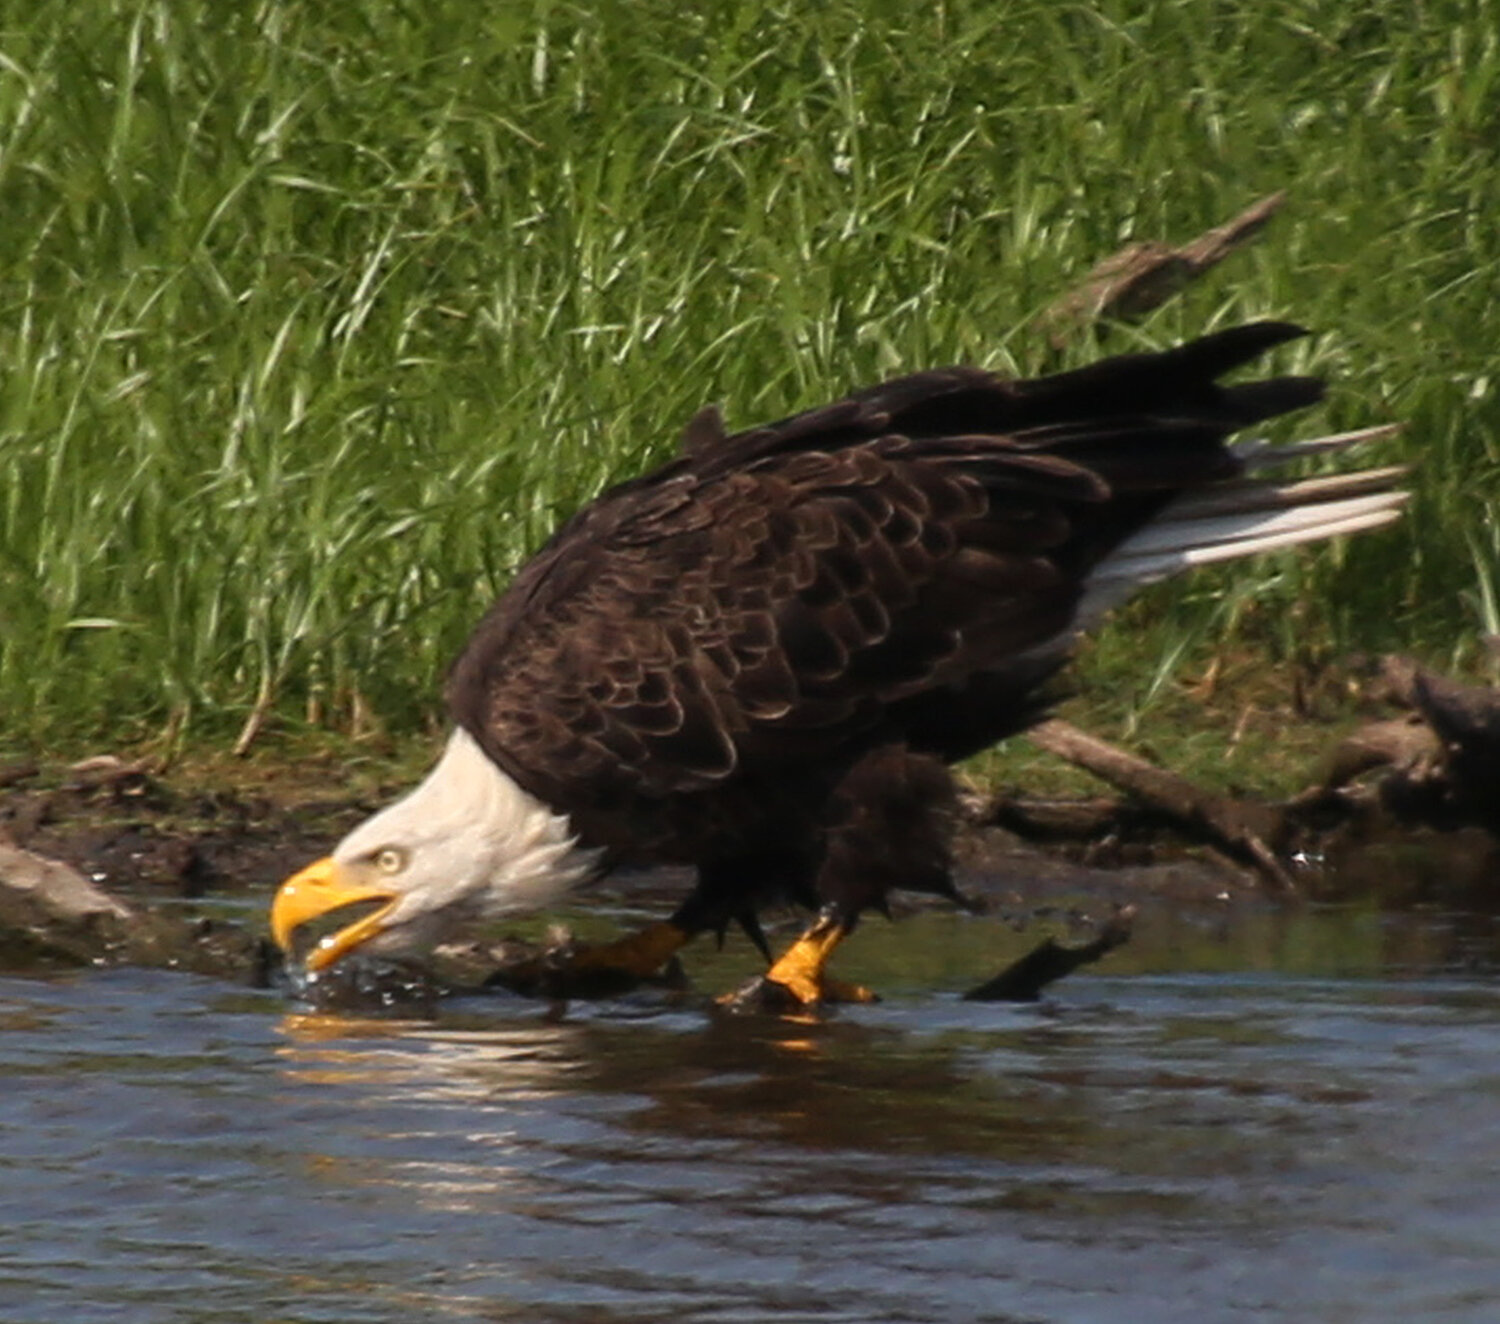 A bald eagle hunts along the marshline.